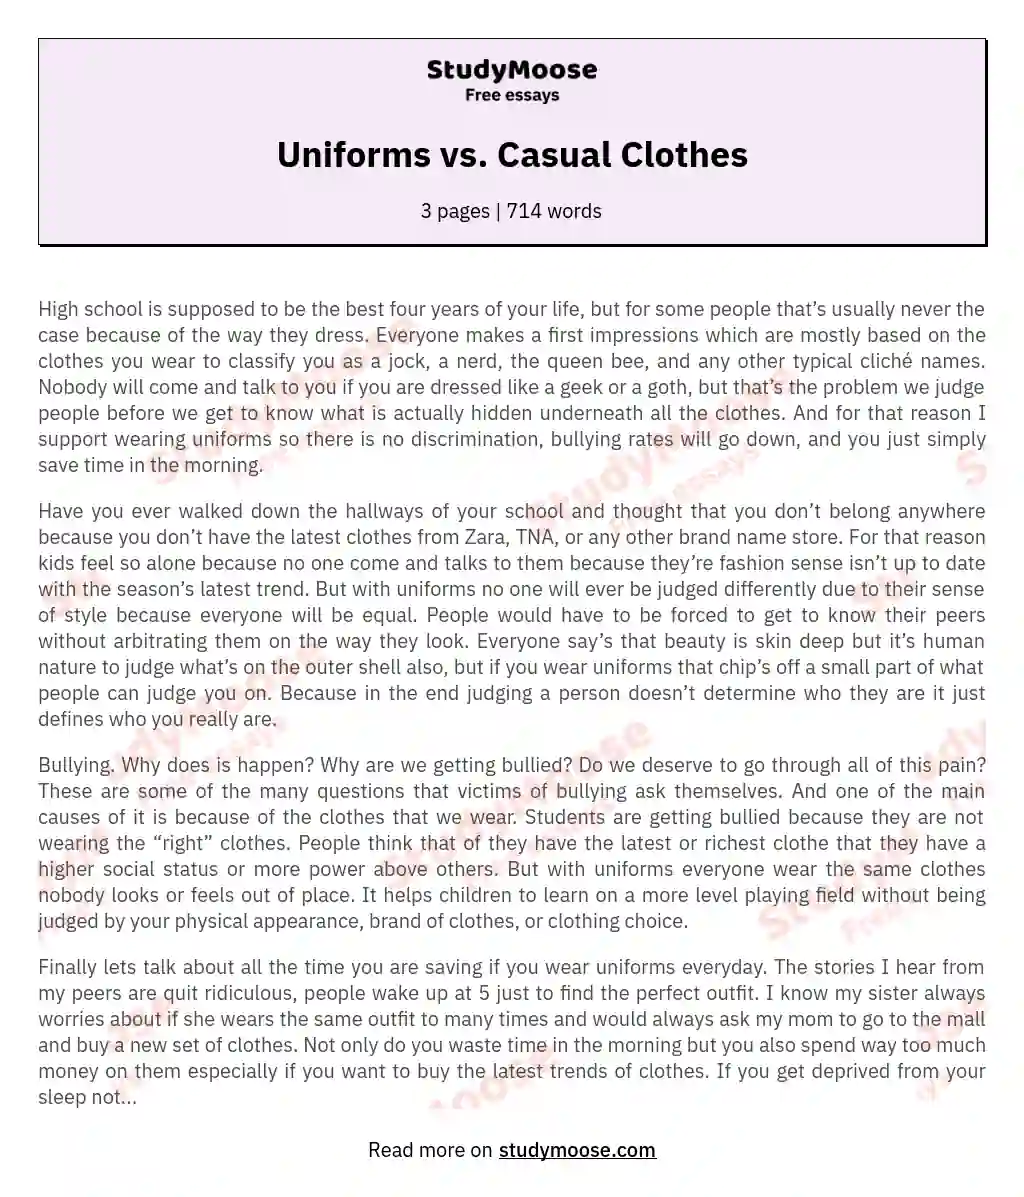 Uniforms vs. Casual Clothes essay